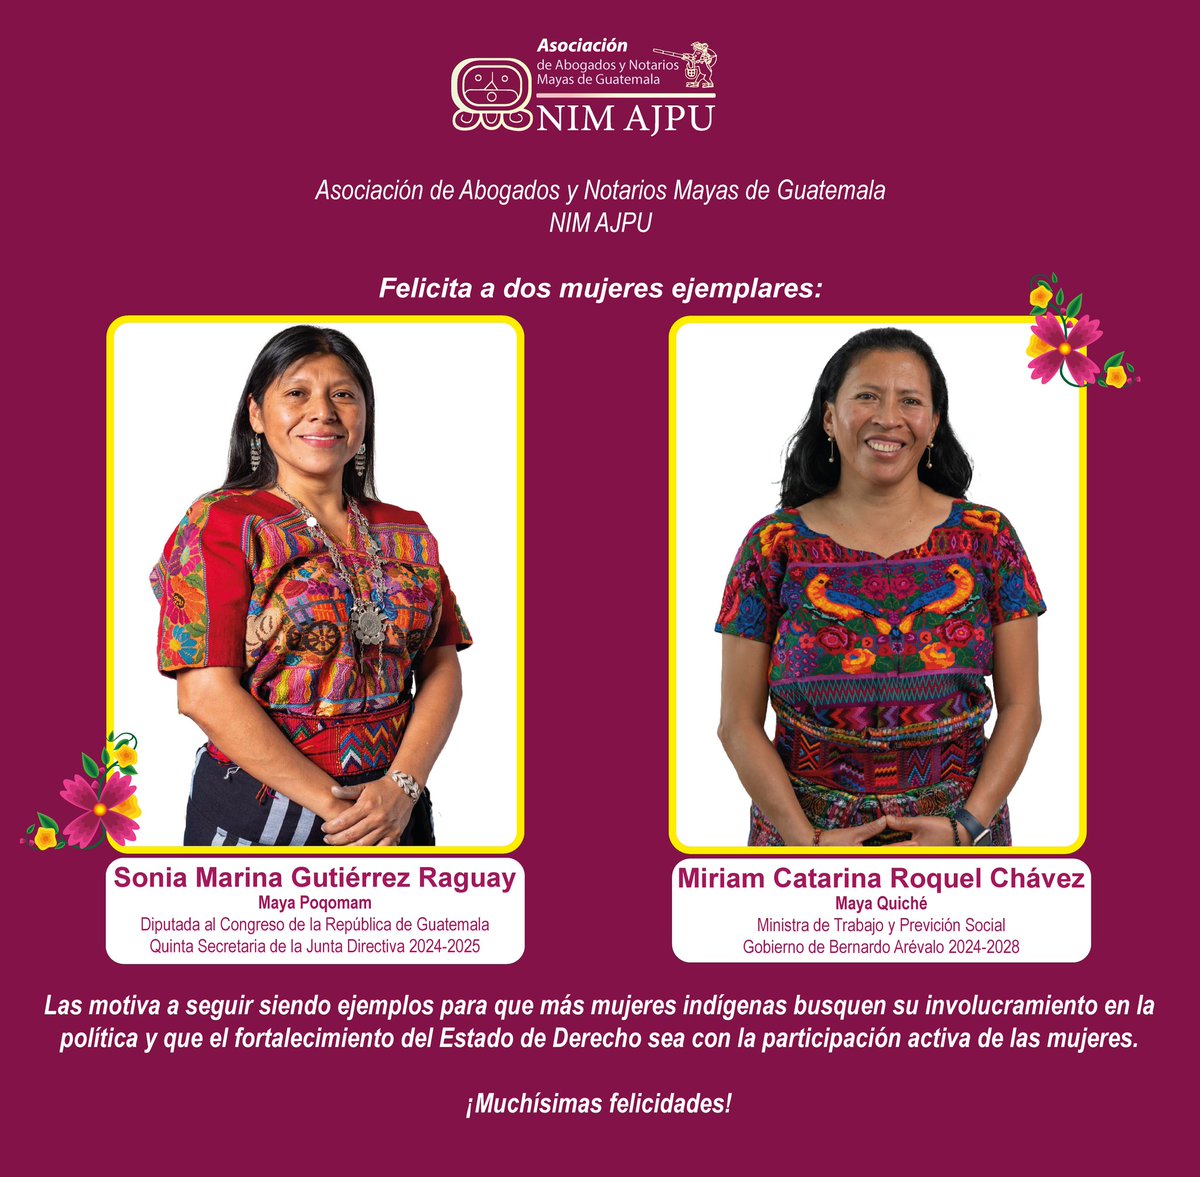 @nimajpu Felicita a dos mujeres ejemplares: @SoniaGRaguay y @miriam_roquel. Las motiva a seguir siendo ejemplos para que más mujeres indígenas busquen su involucramiento en la política y que el fortalecimiento del Estado de Derecho sea con la participación activa de las mujeres.